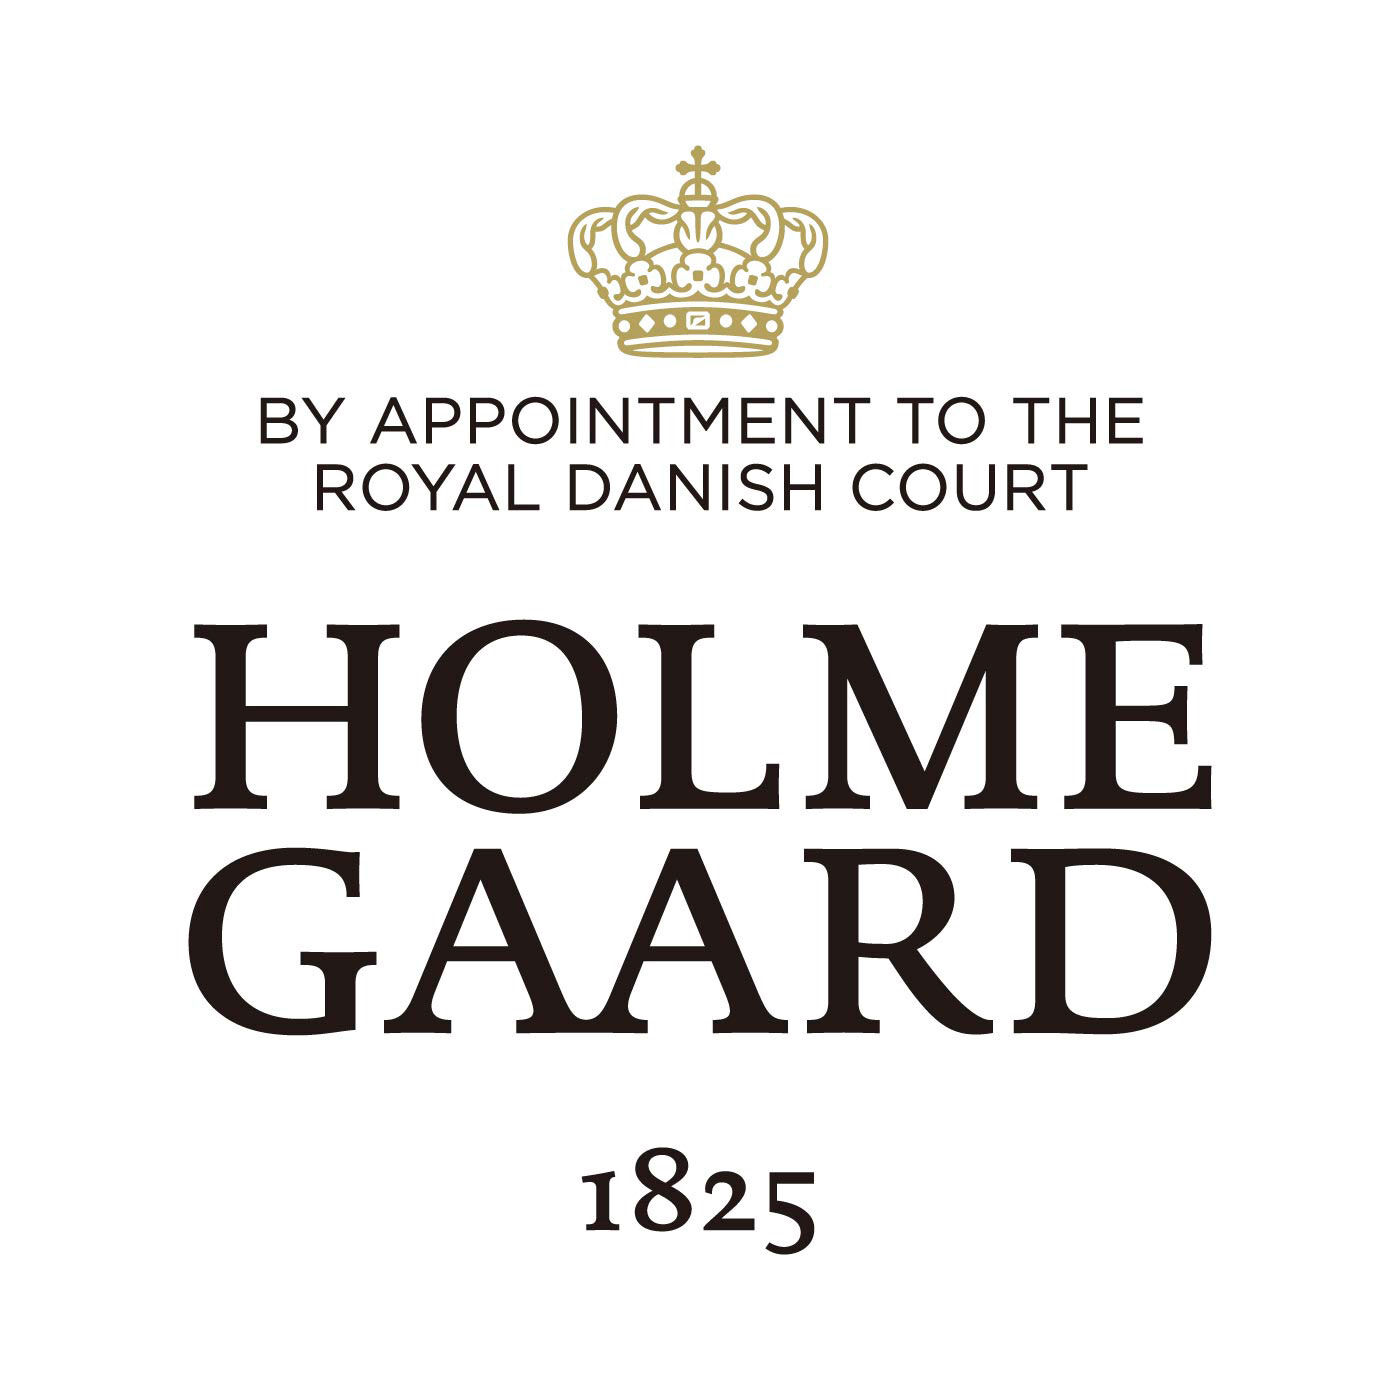 SeeMONO|北欧デザインの革ベルトと吹きガラスが素敵　マルチユースなポット〈Ｍ〉／ホルムガード|HOLMEGAARD（ホルムガード）は、1825年にデンマークに生まれた伝統あるガラスブランドです。1900年代、多くの芸術家が手掛け始めるホルムガードの商品は、そのクオリティの高さからデンマーク王室 御用達ブランドに選ばれました。熟練の職人たちによる吹きガラス製法で生み出されるユニークなデ ザインのガラス製品は世界中の美術館に所蔵されています。